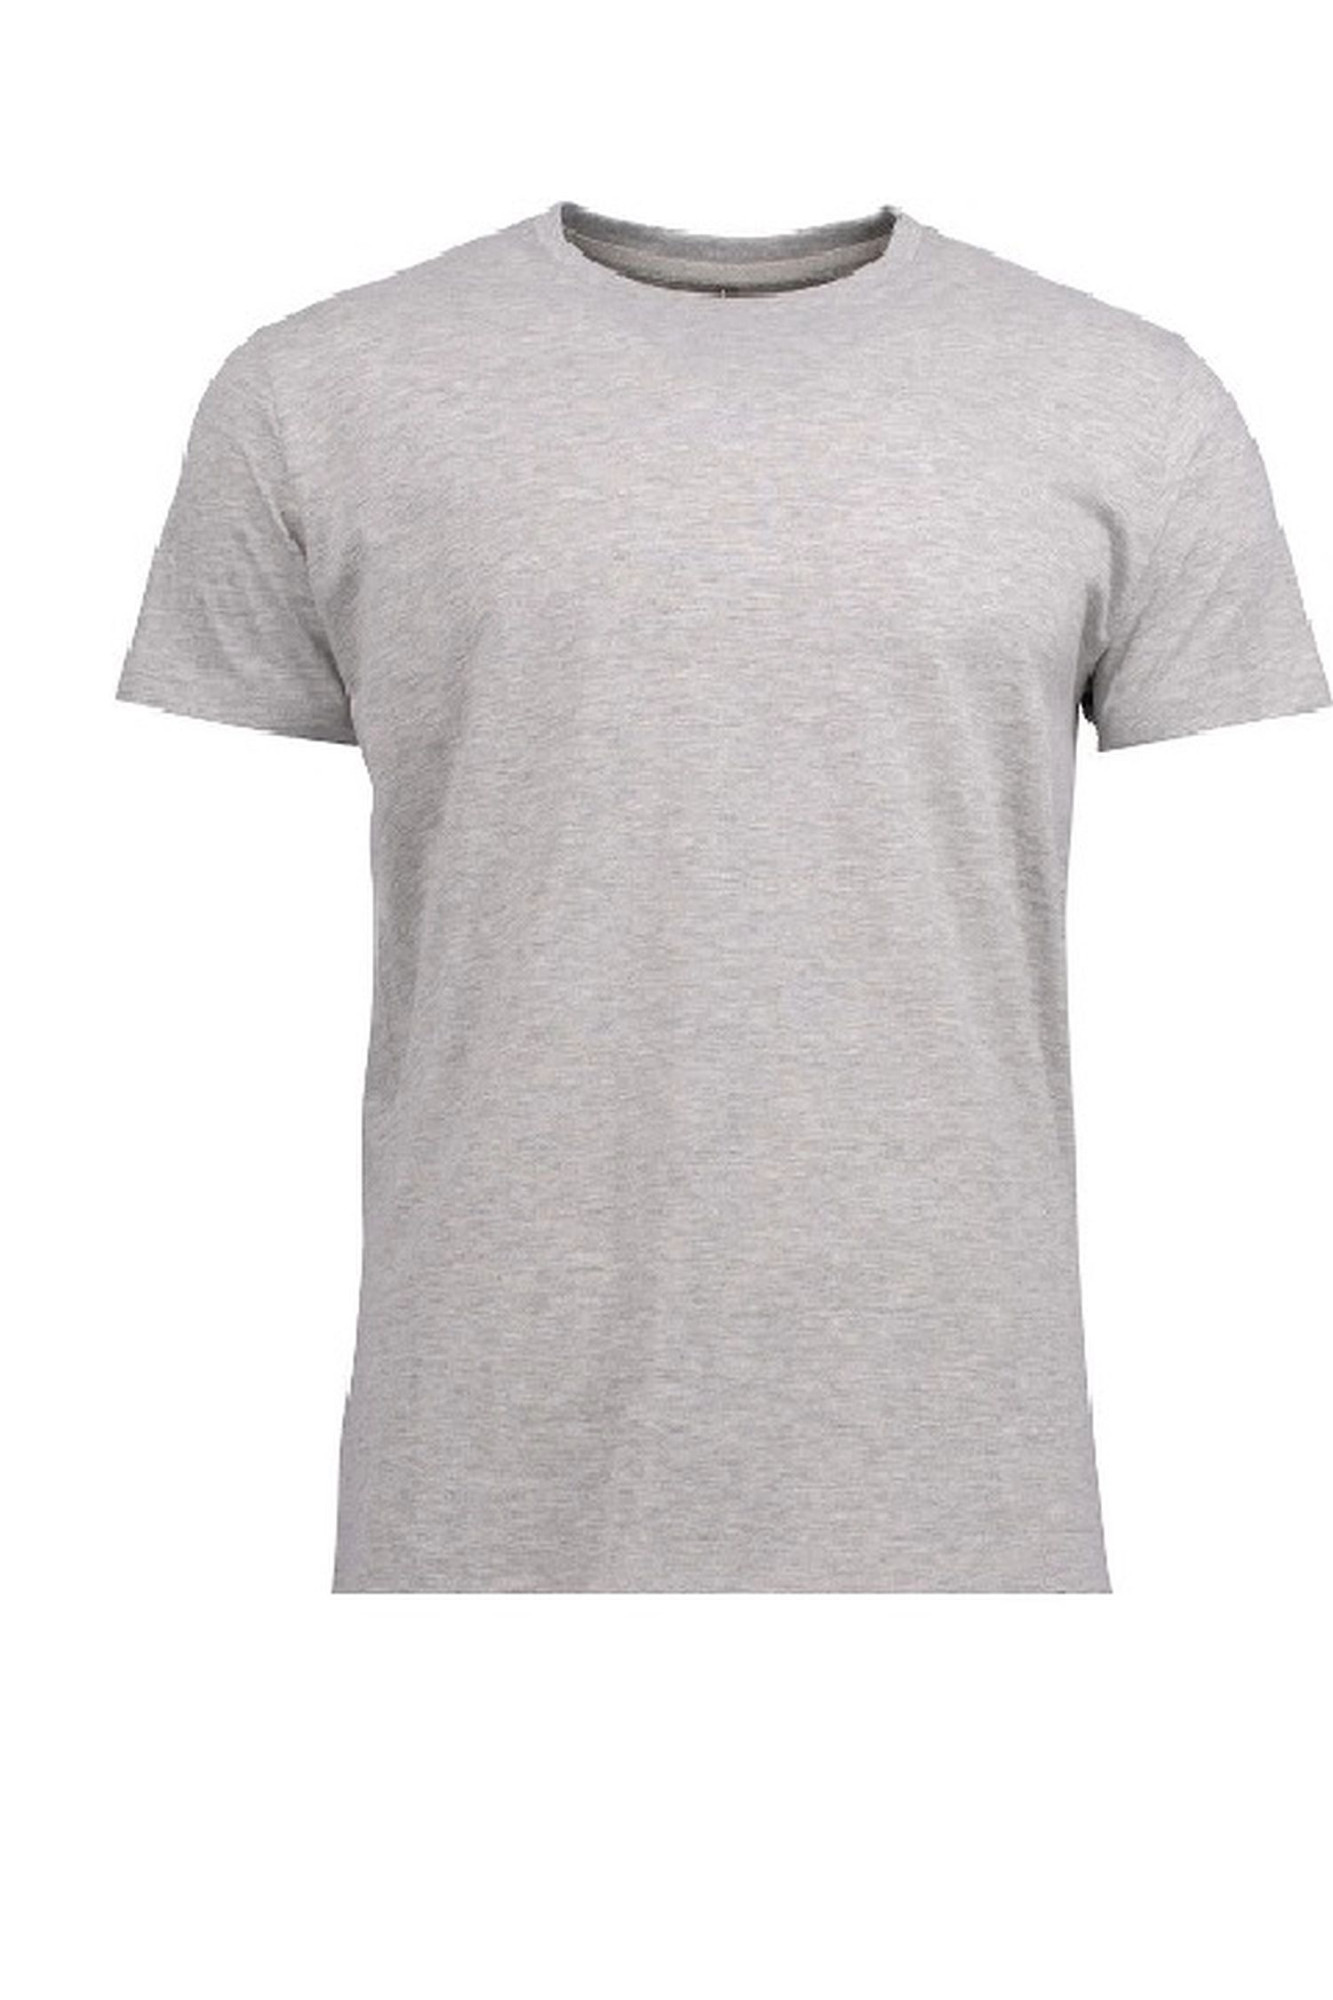 Pánské tričko 002 grey - NOVITI šedá XXL